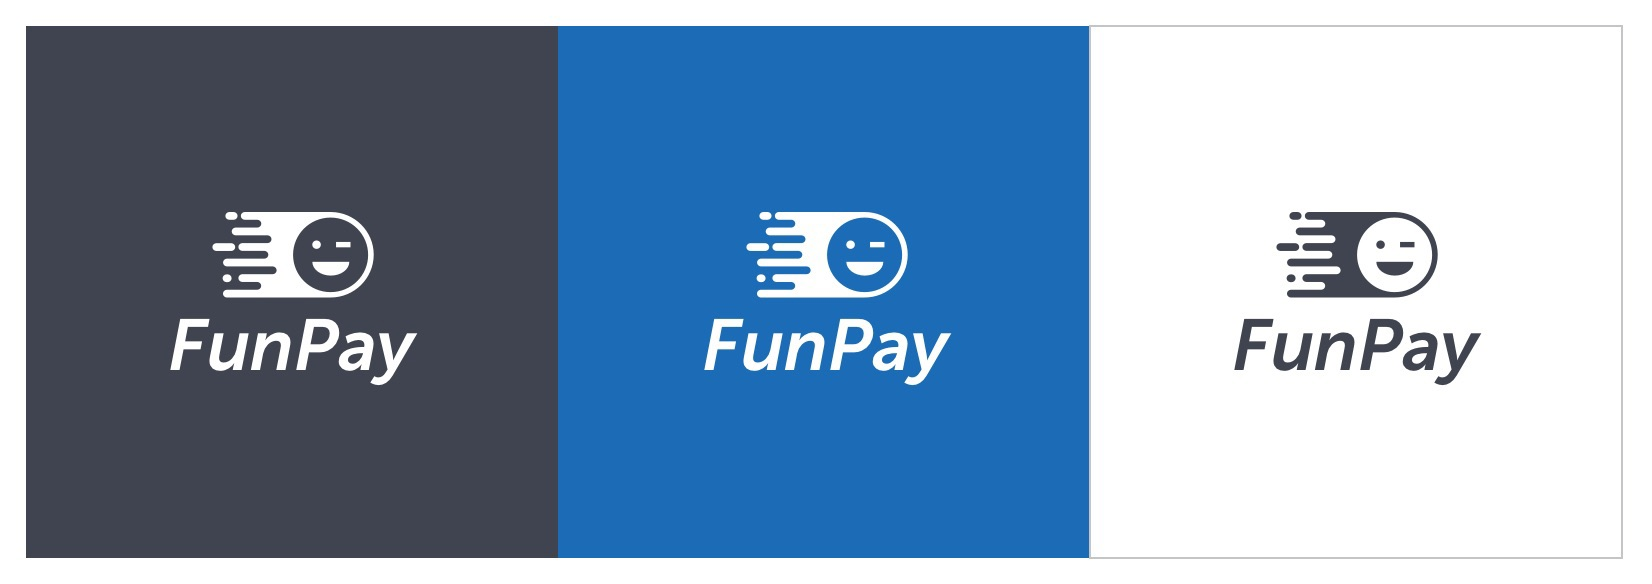 Фани плей. Funpay. Funpay иконка. Аватарки для funpay. Логотип фанпей.